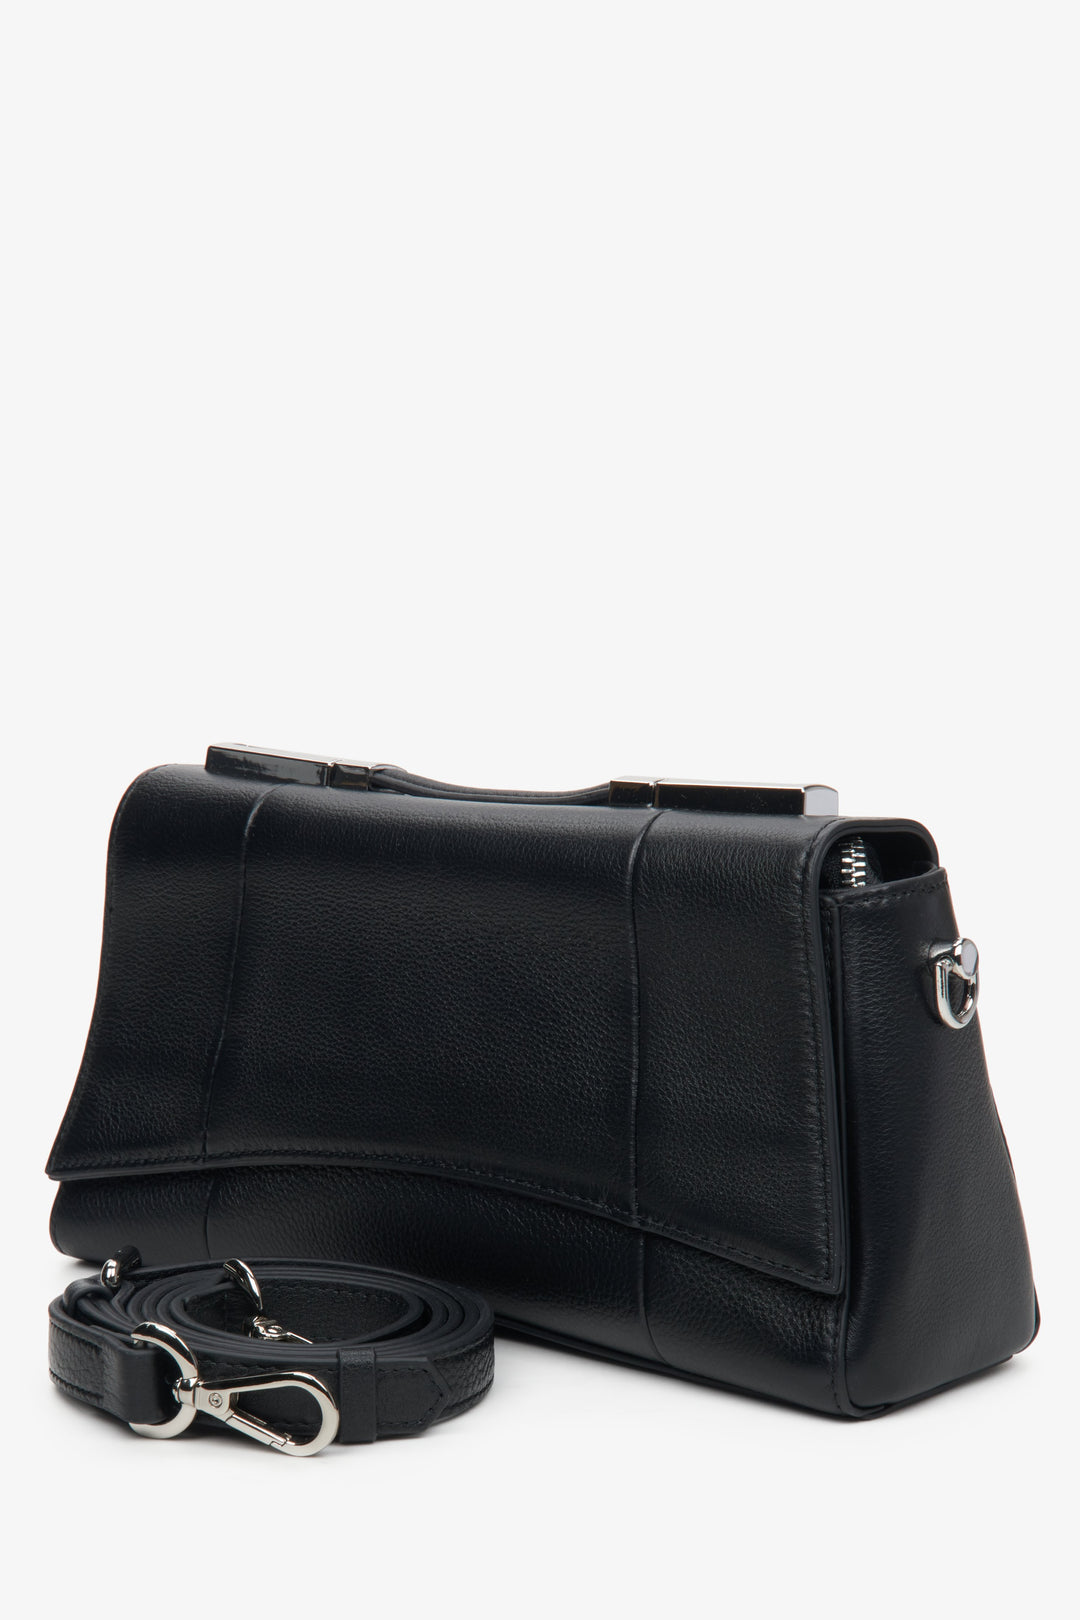 Women's black shoulder bag with an adjustable strap.